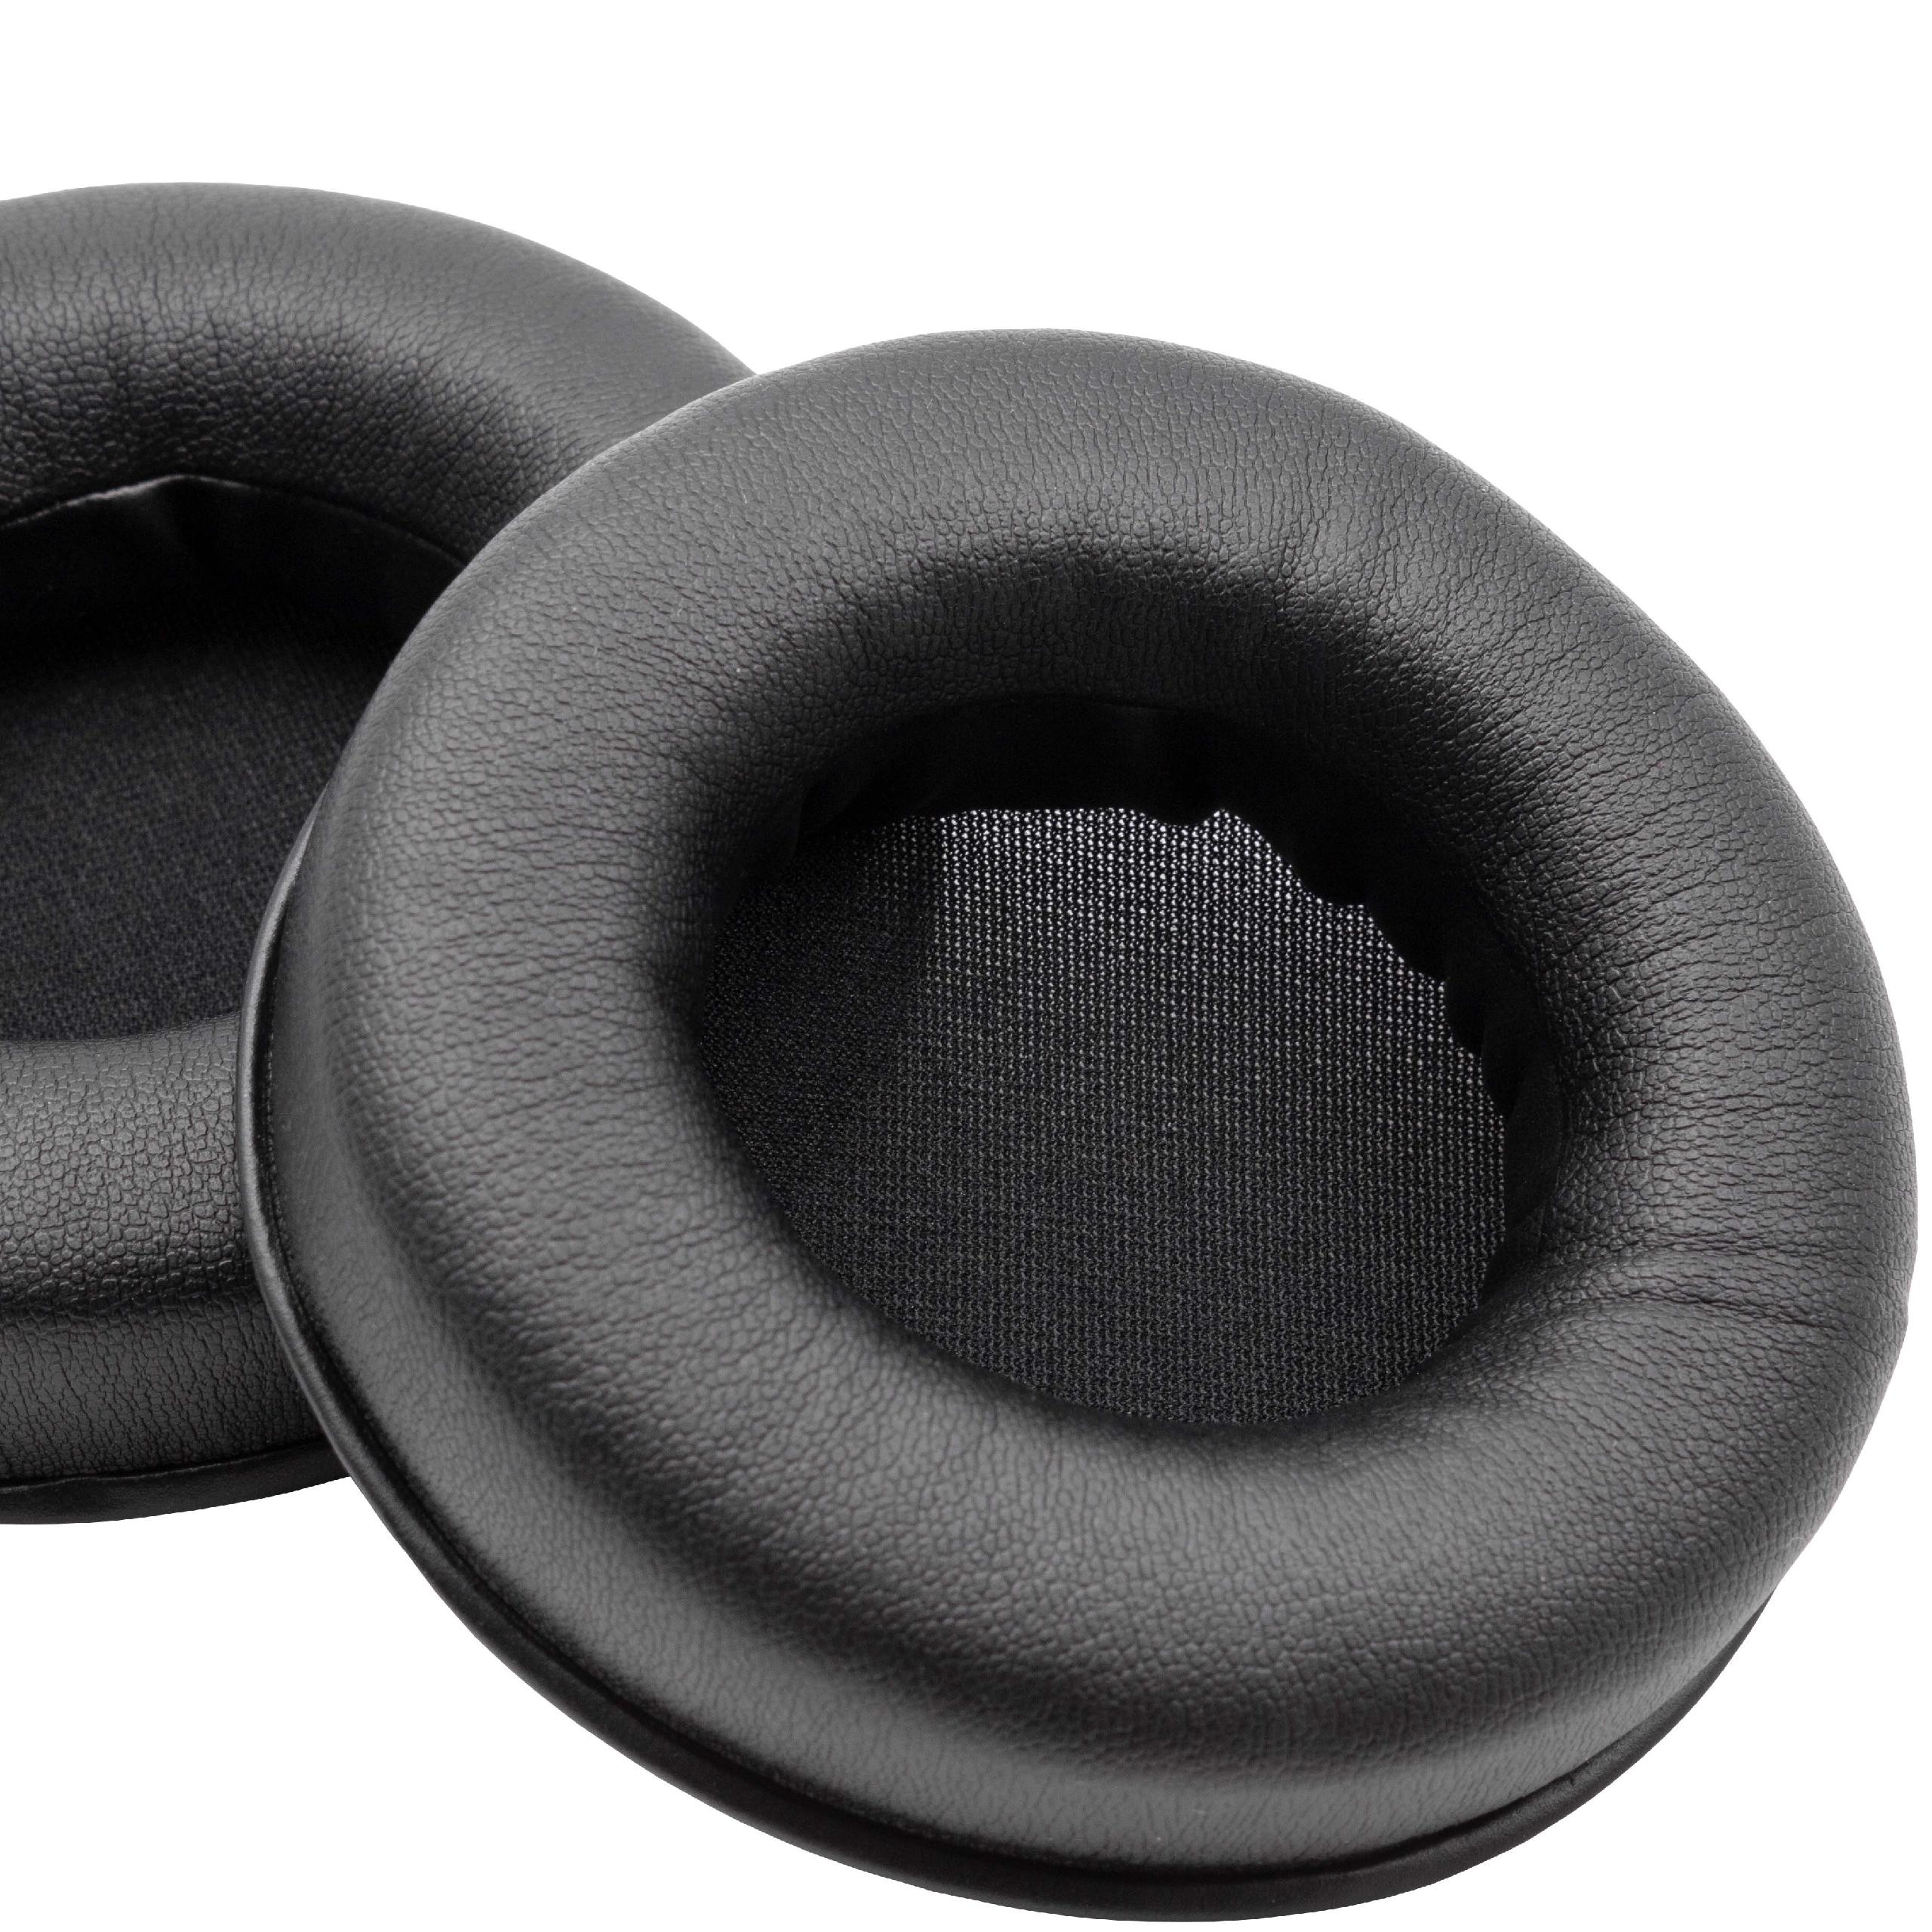 Ohrenpolster passend für Razer Kraken Kopfhörer u.a. - Polyurethan / Schaumstoff, 8,7 cm Außendurchmesser, 20 